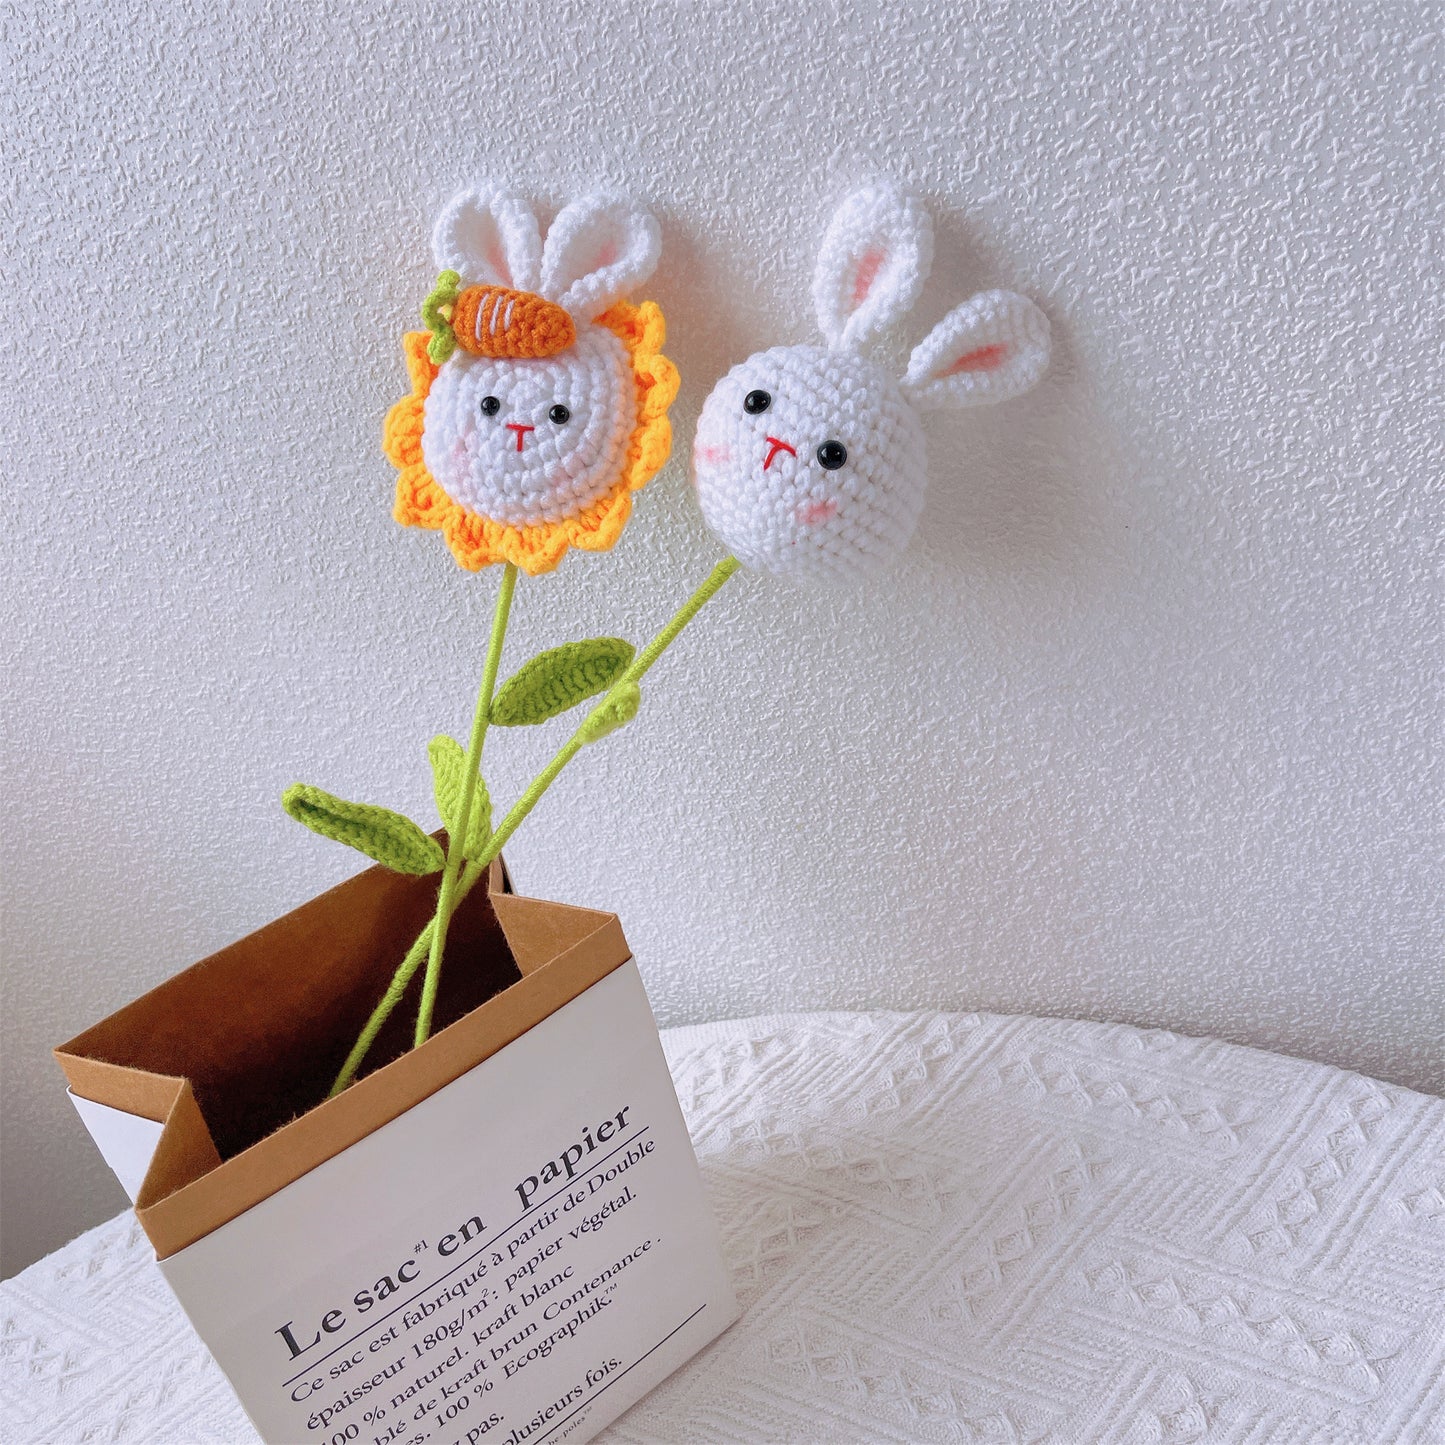 Bunny Bliss: Handgefertigter, gehäkelter niedlicher Hasenkopfstecker mit Hasen- und Sonnenblumen-Finish für eine skurrile Gartendekoration